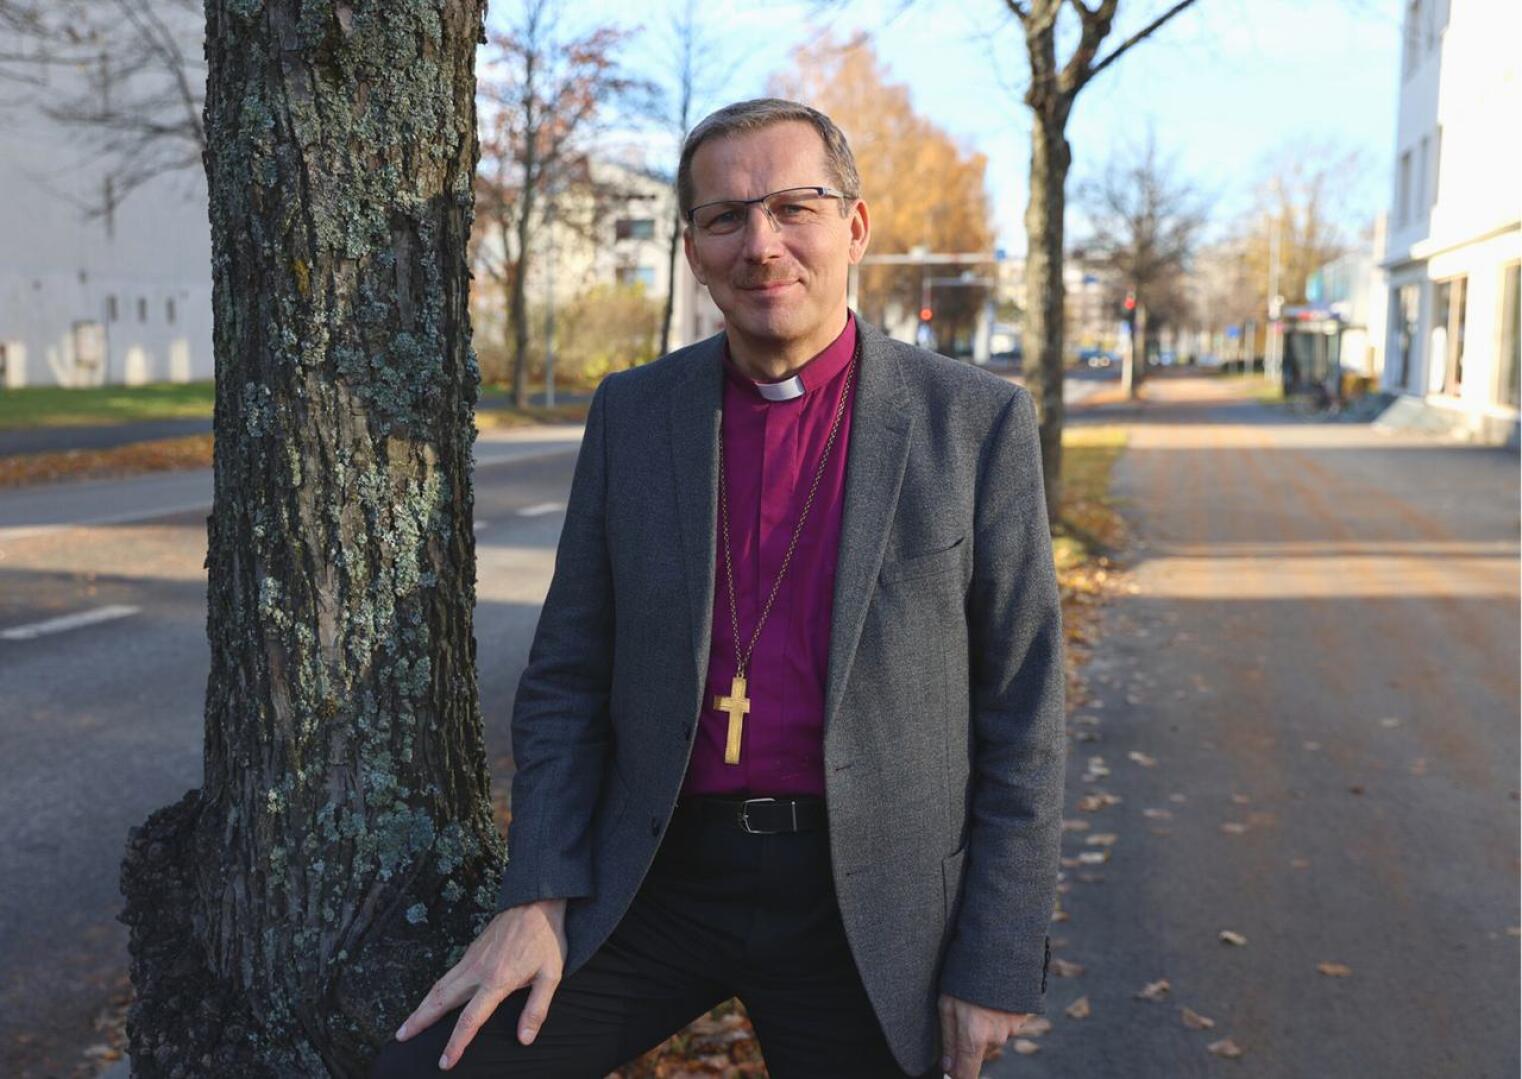 Piispa Jukka Keskitalo sanoo, että vaaleissa on paljon hyviä ehdokkaita.